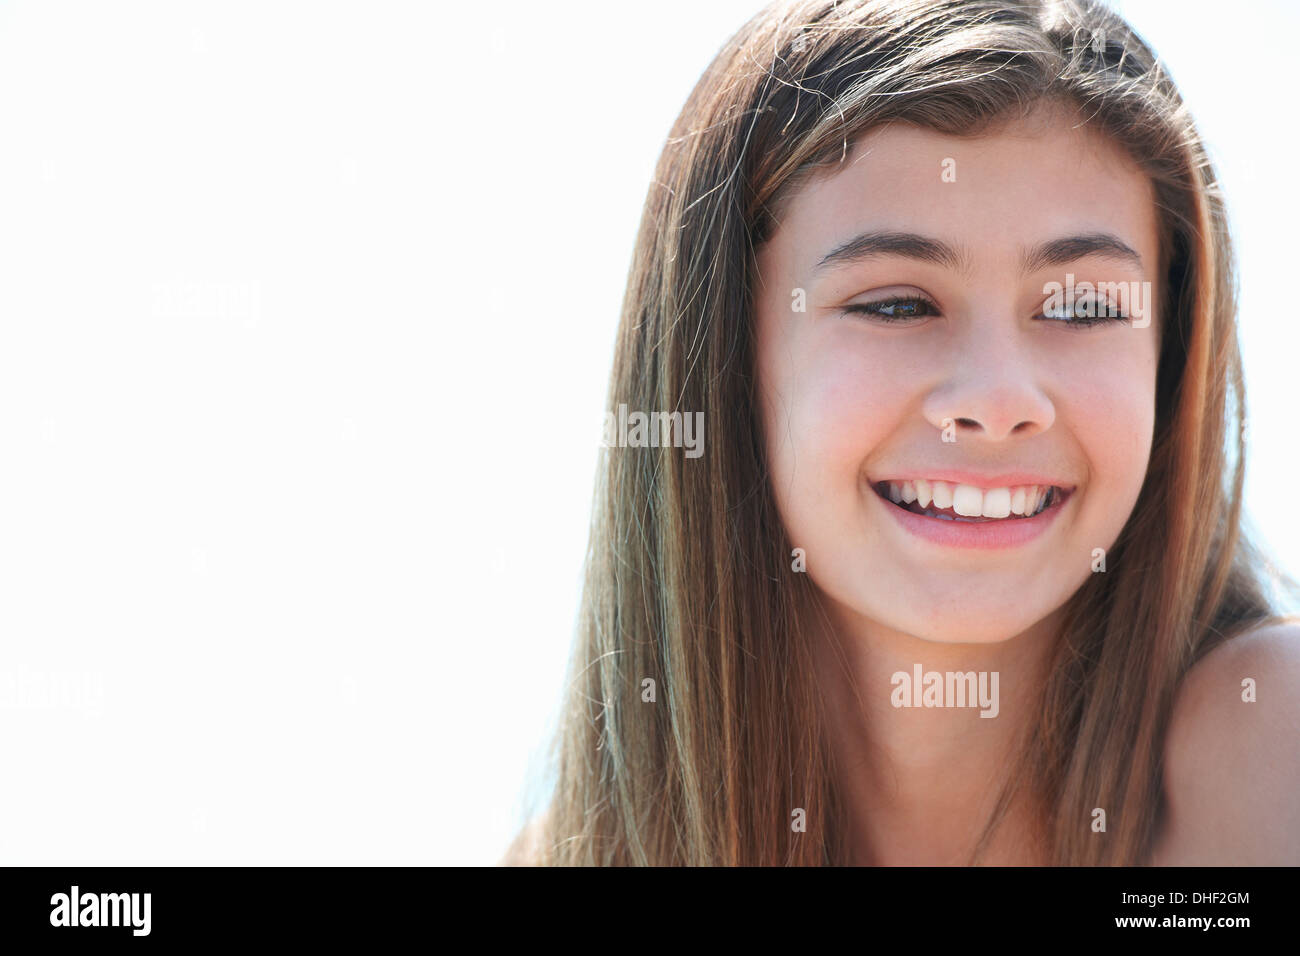 Ritratto di bruna ragazza adolescente che guarda lontano, sorridente Foto Stock